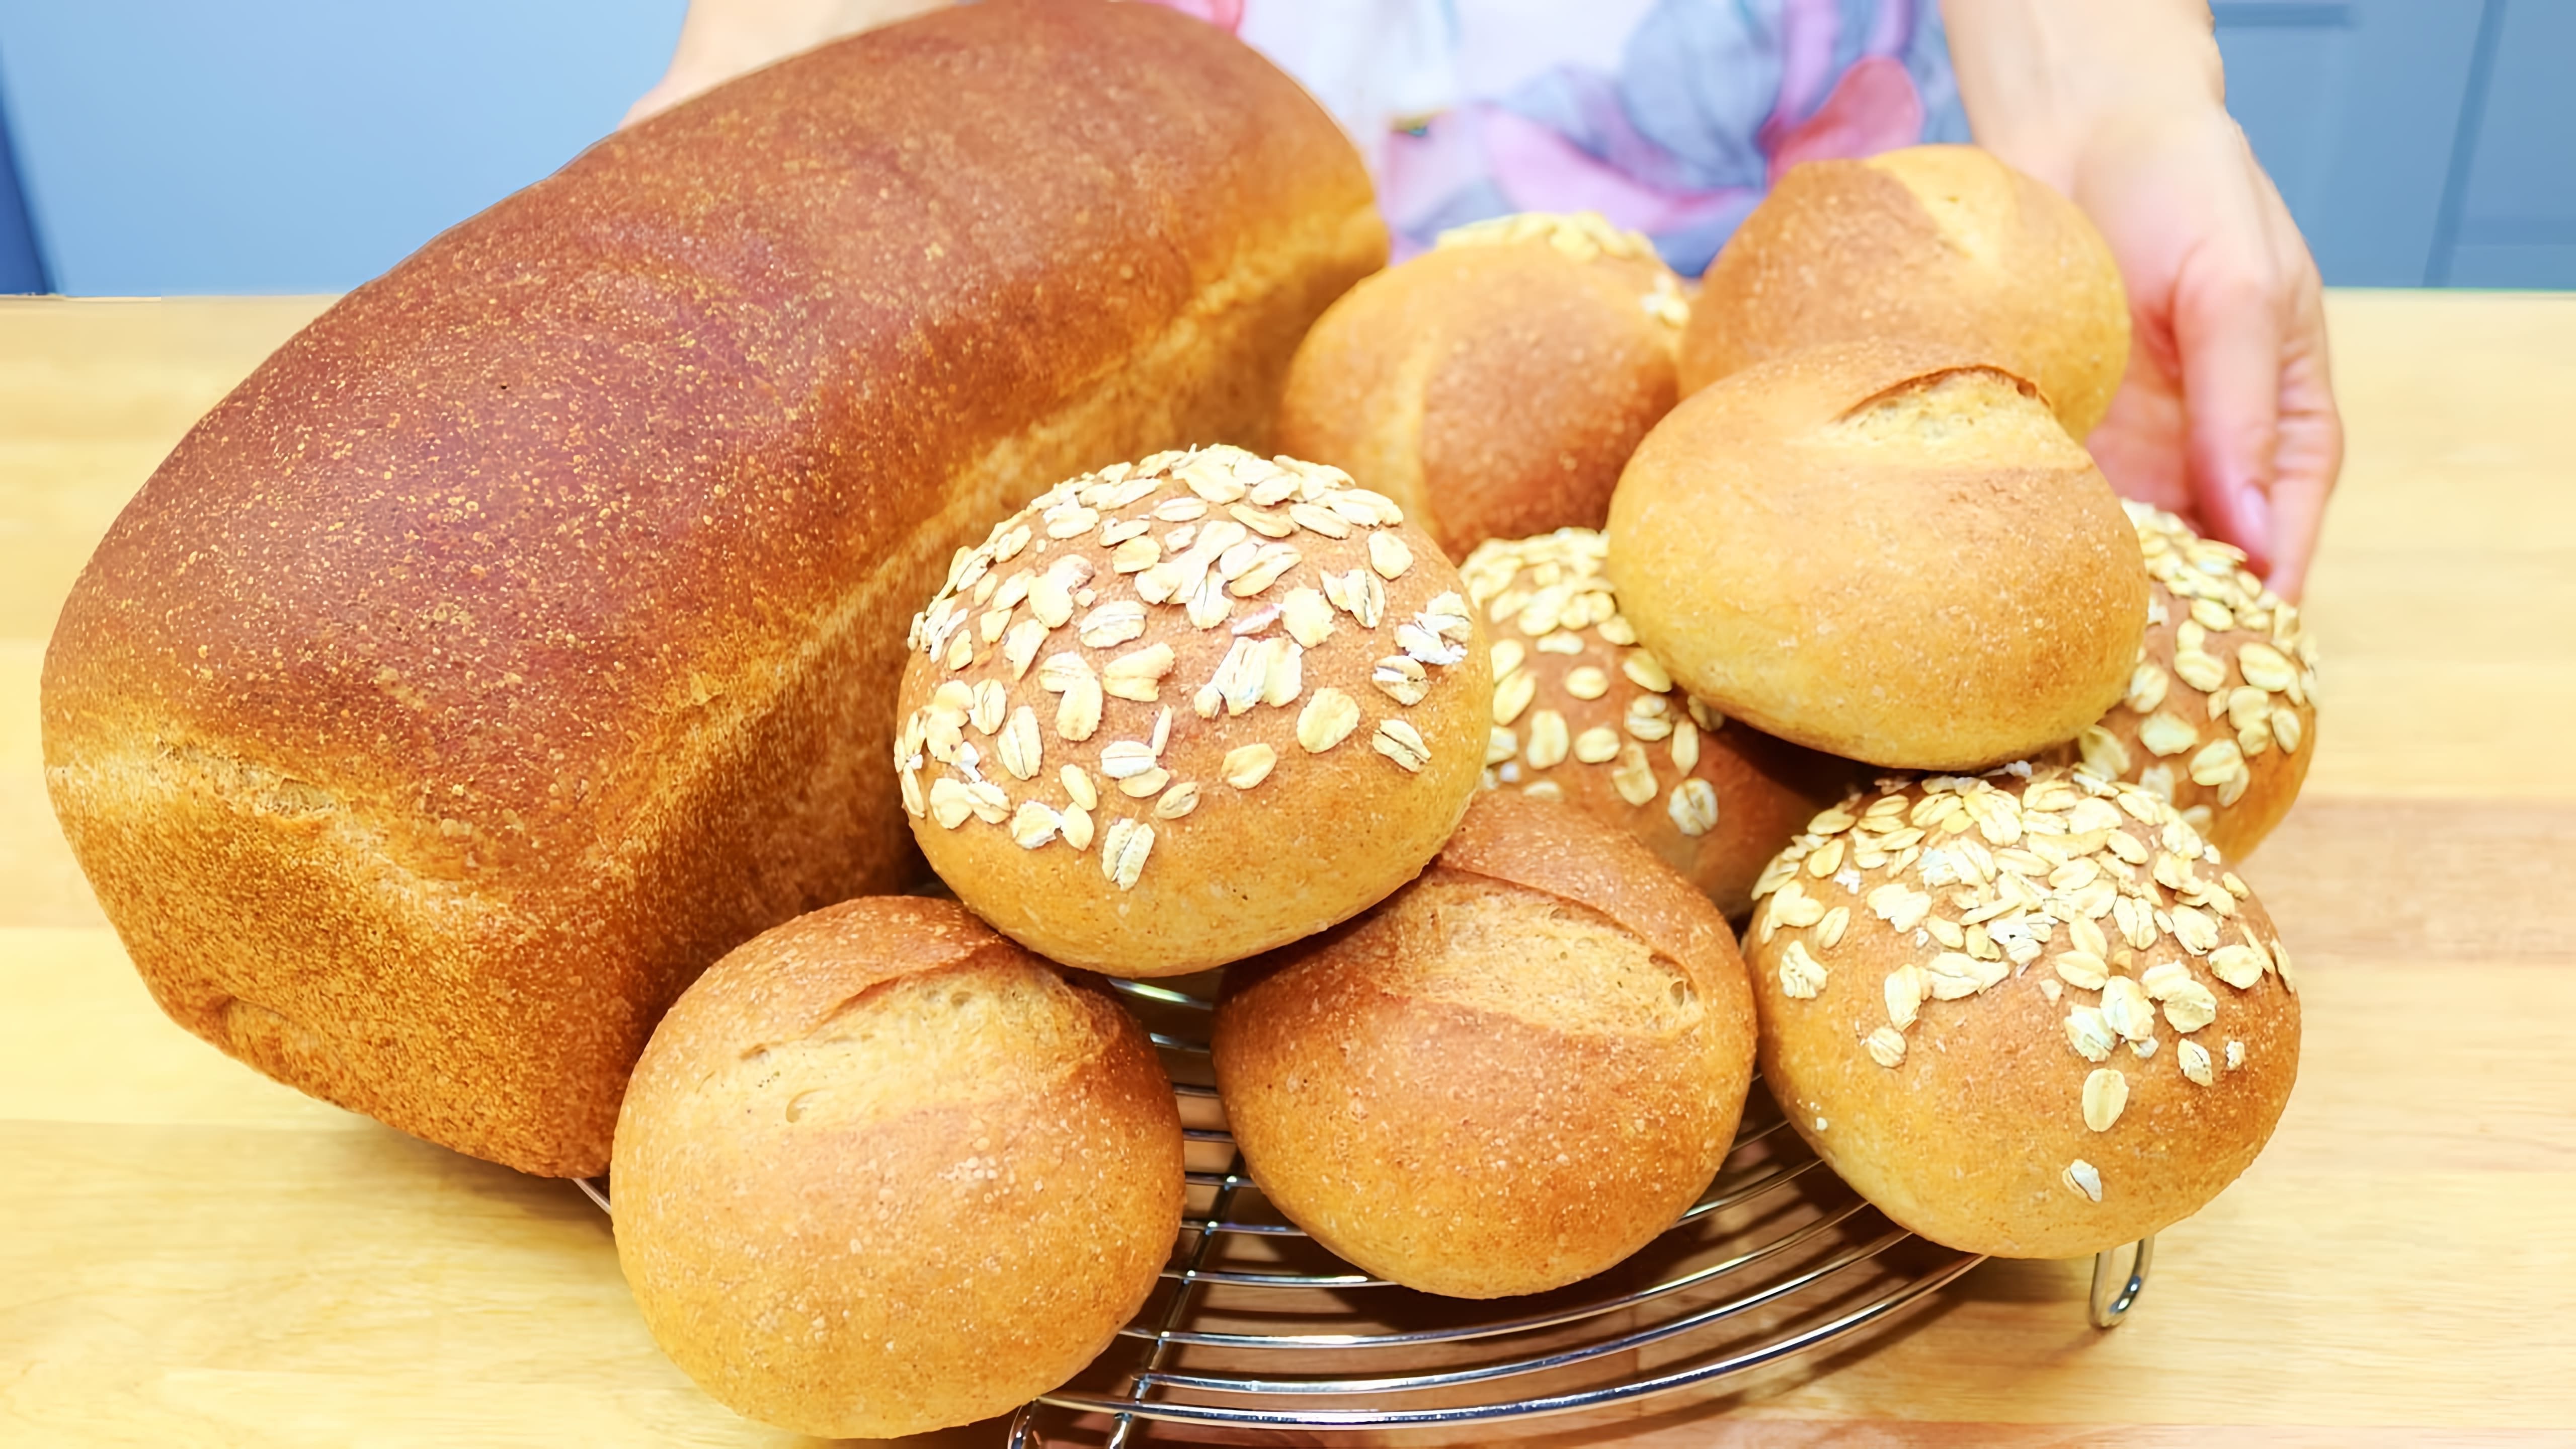 В этом видео демонстрируется рецепт овсяного хлеба и булочек